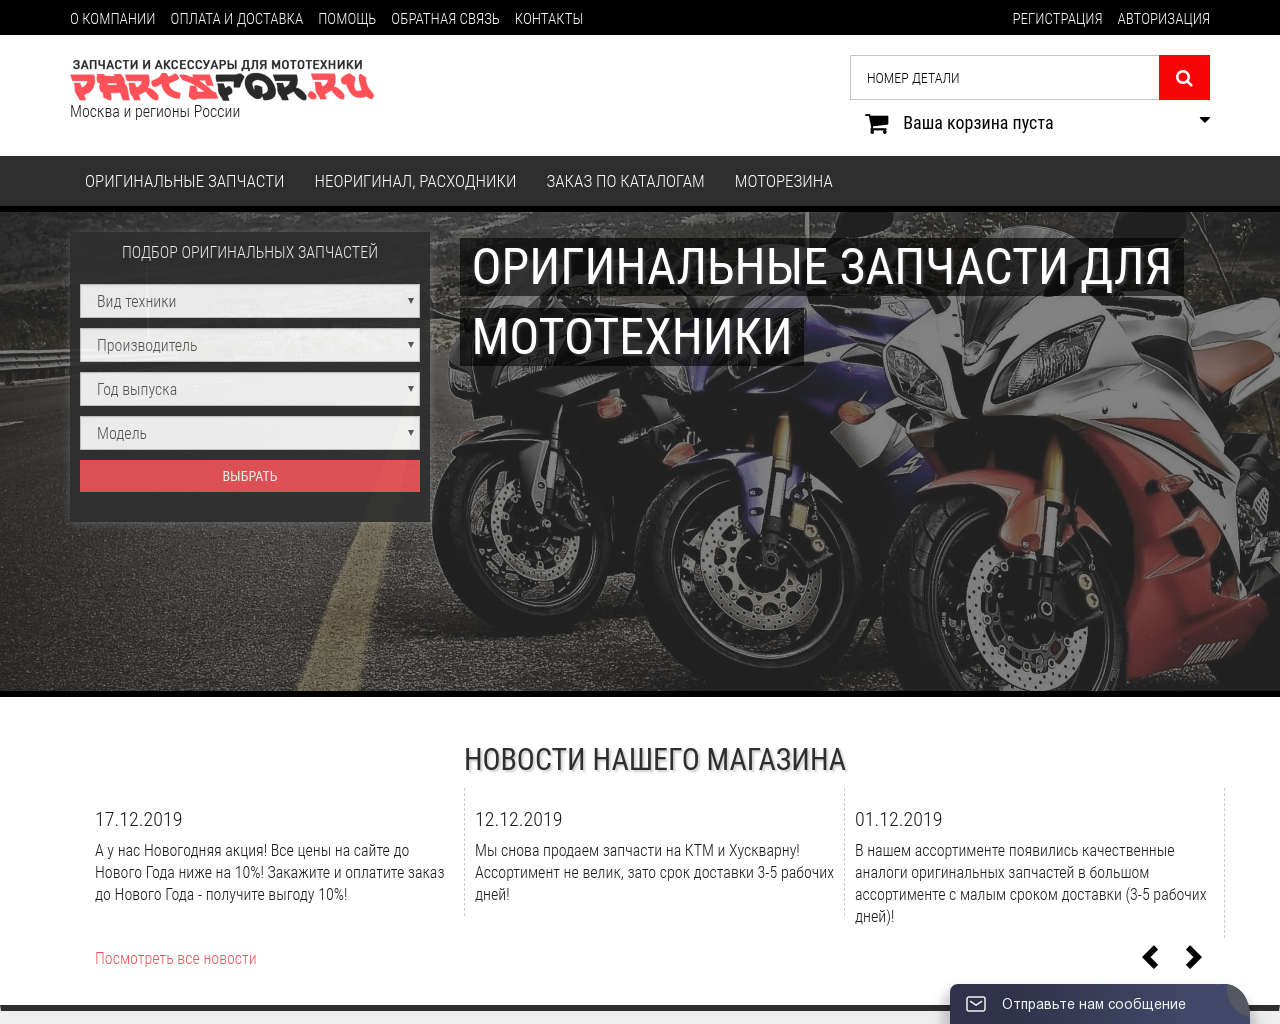 Изображение сайта partsfor.ru в разрешении 1280x1024